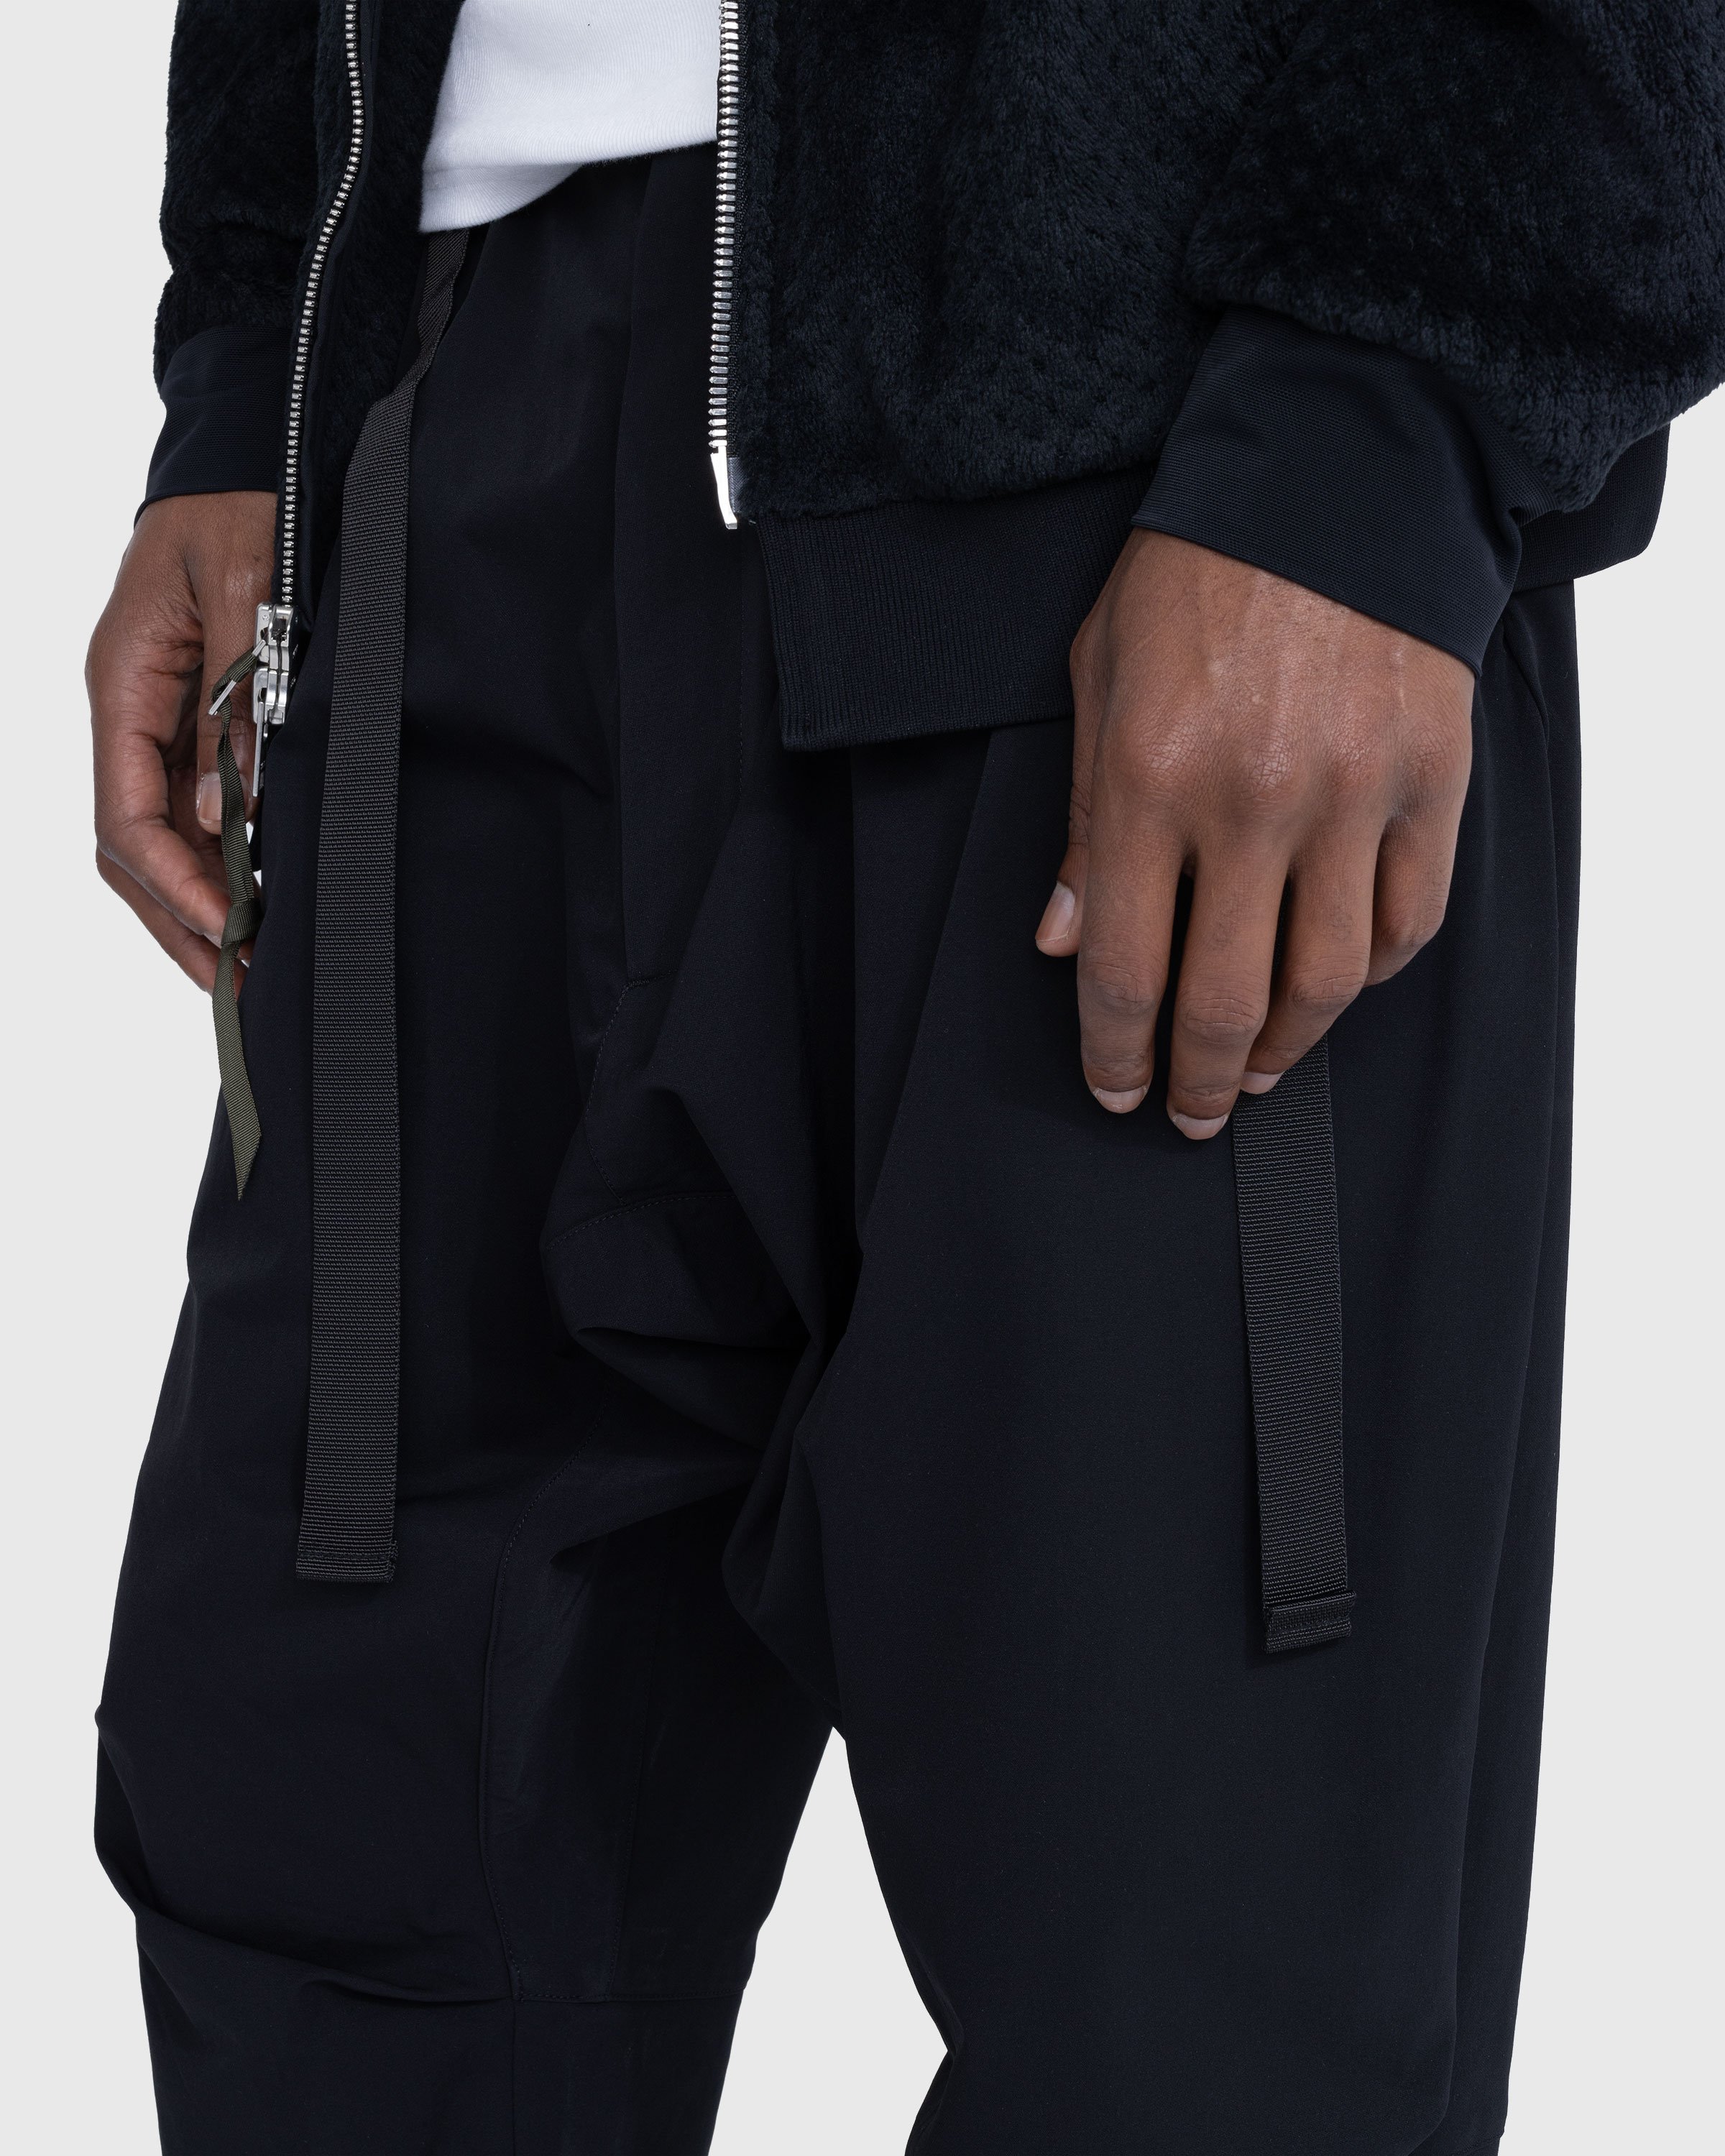 ACRONYM - P15-DS Pant Black - Clothing - Black - Image 5